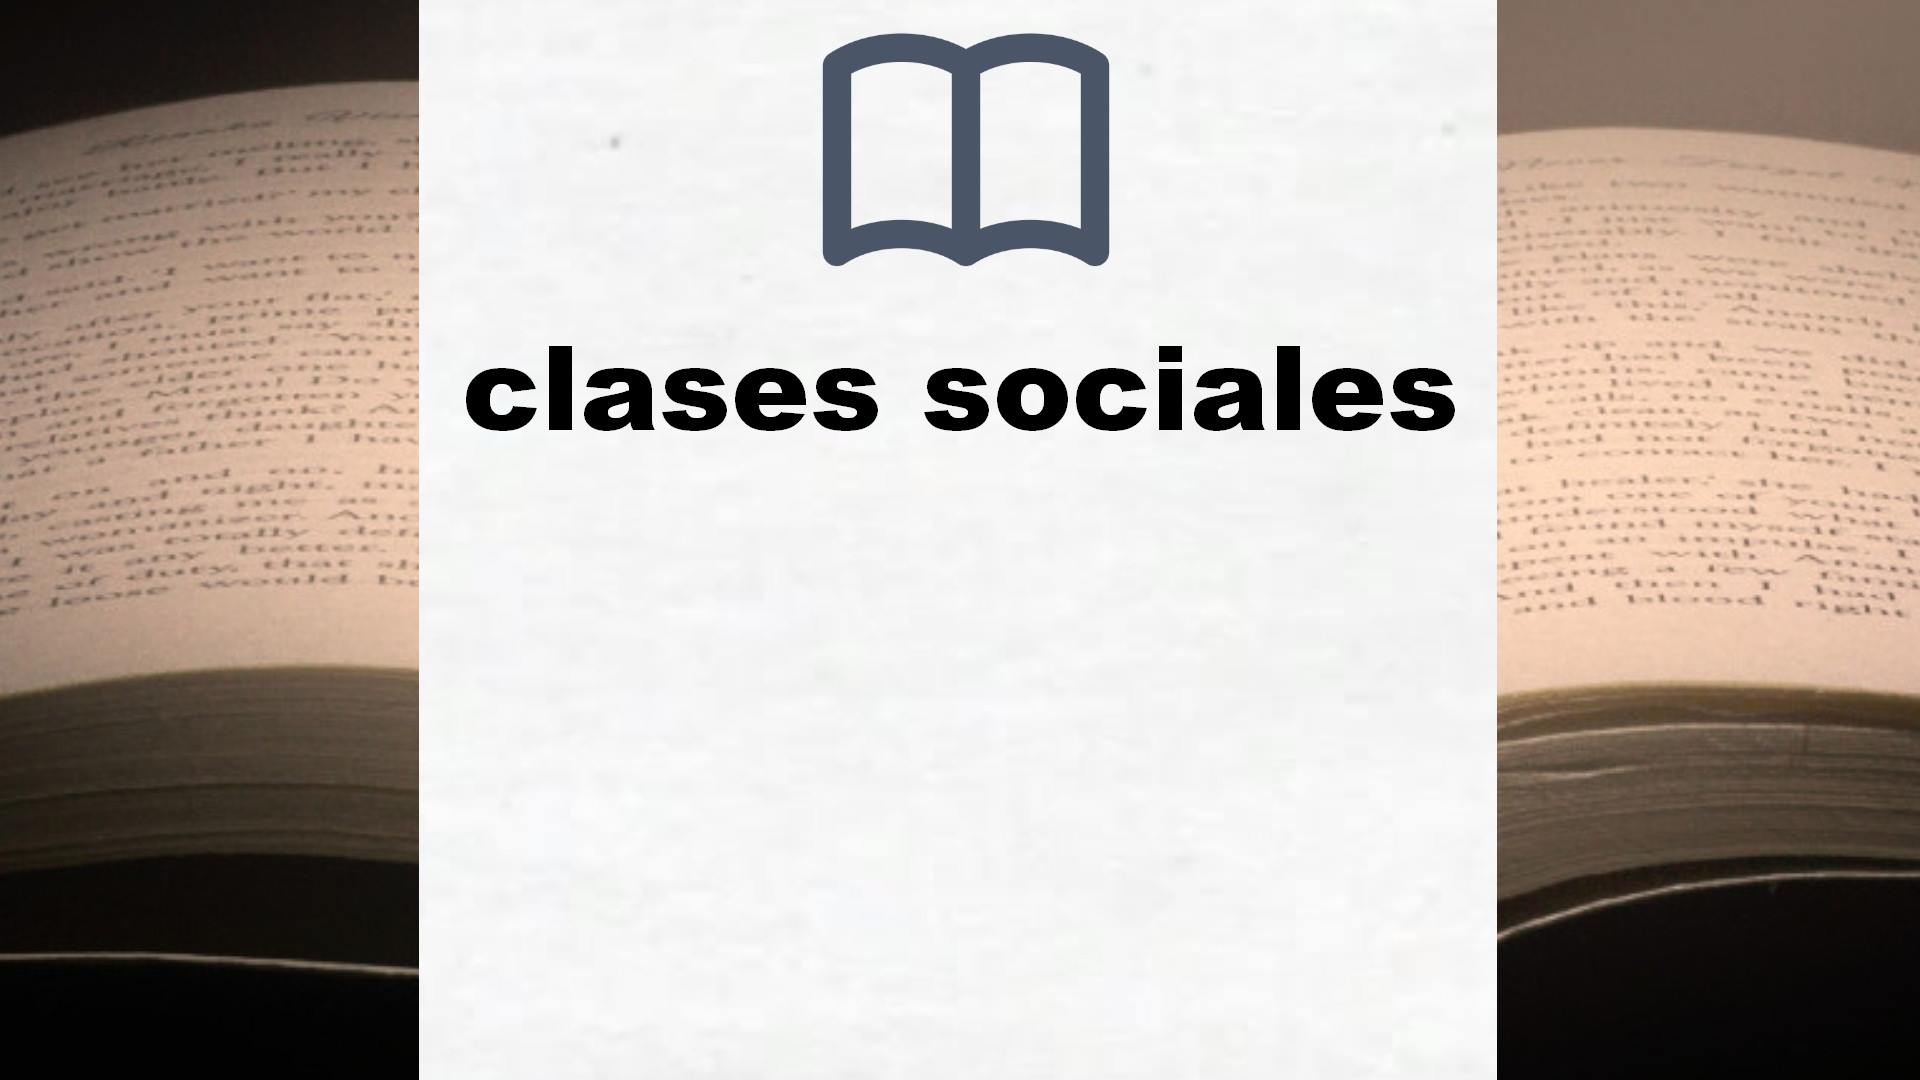 Libros sobre clases sociales